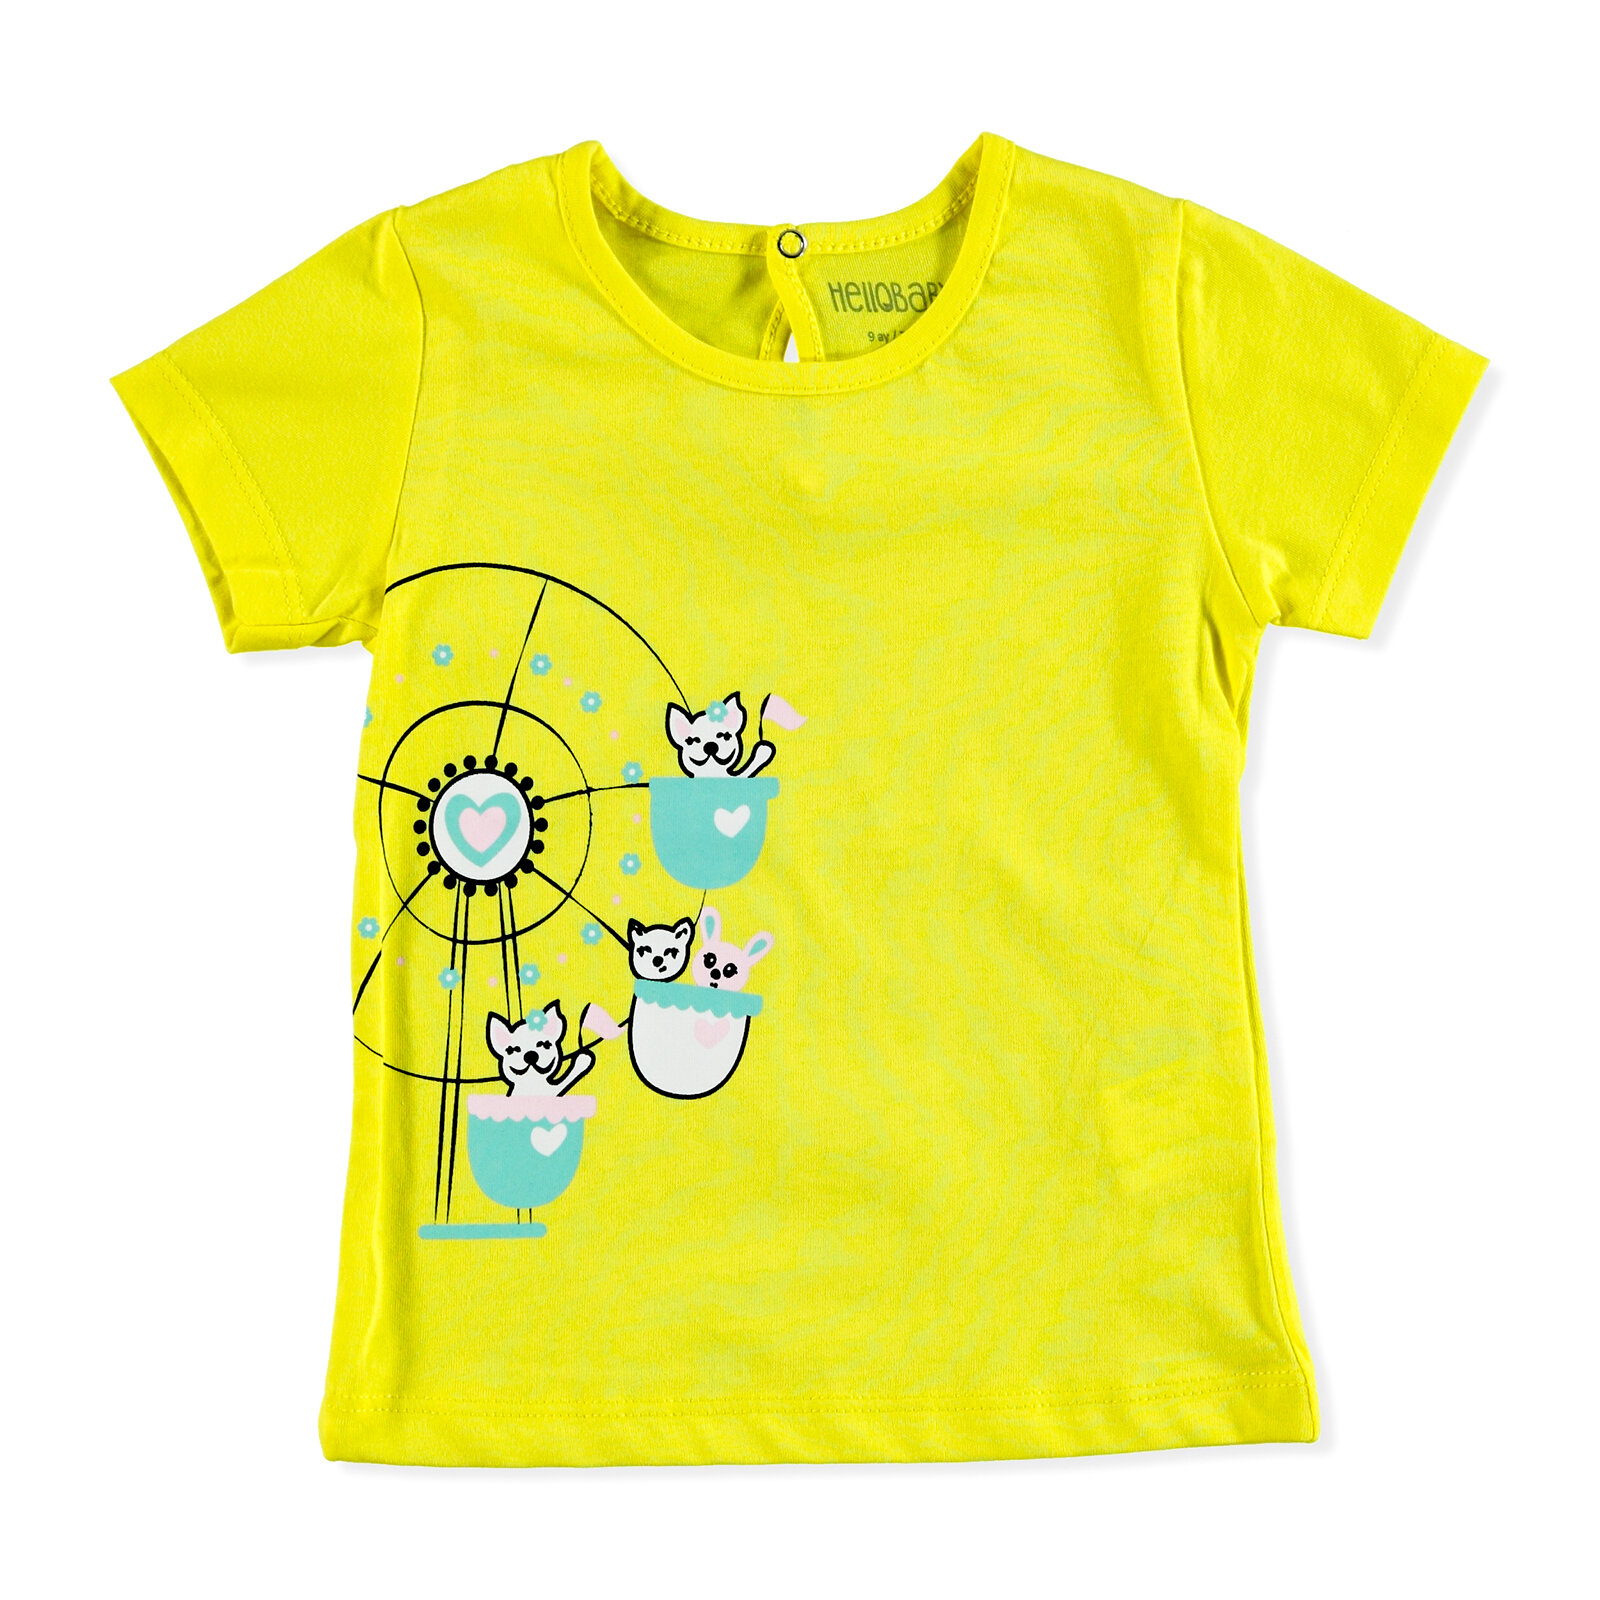 Kız Bebek Basic T-Shirt